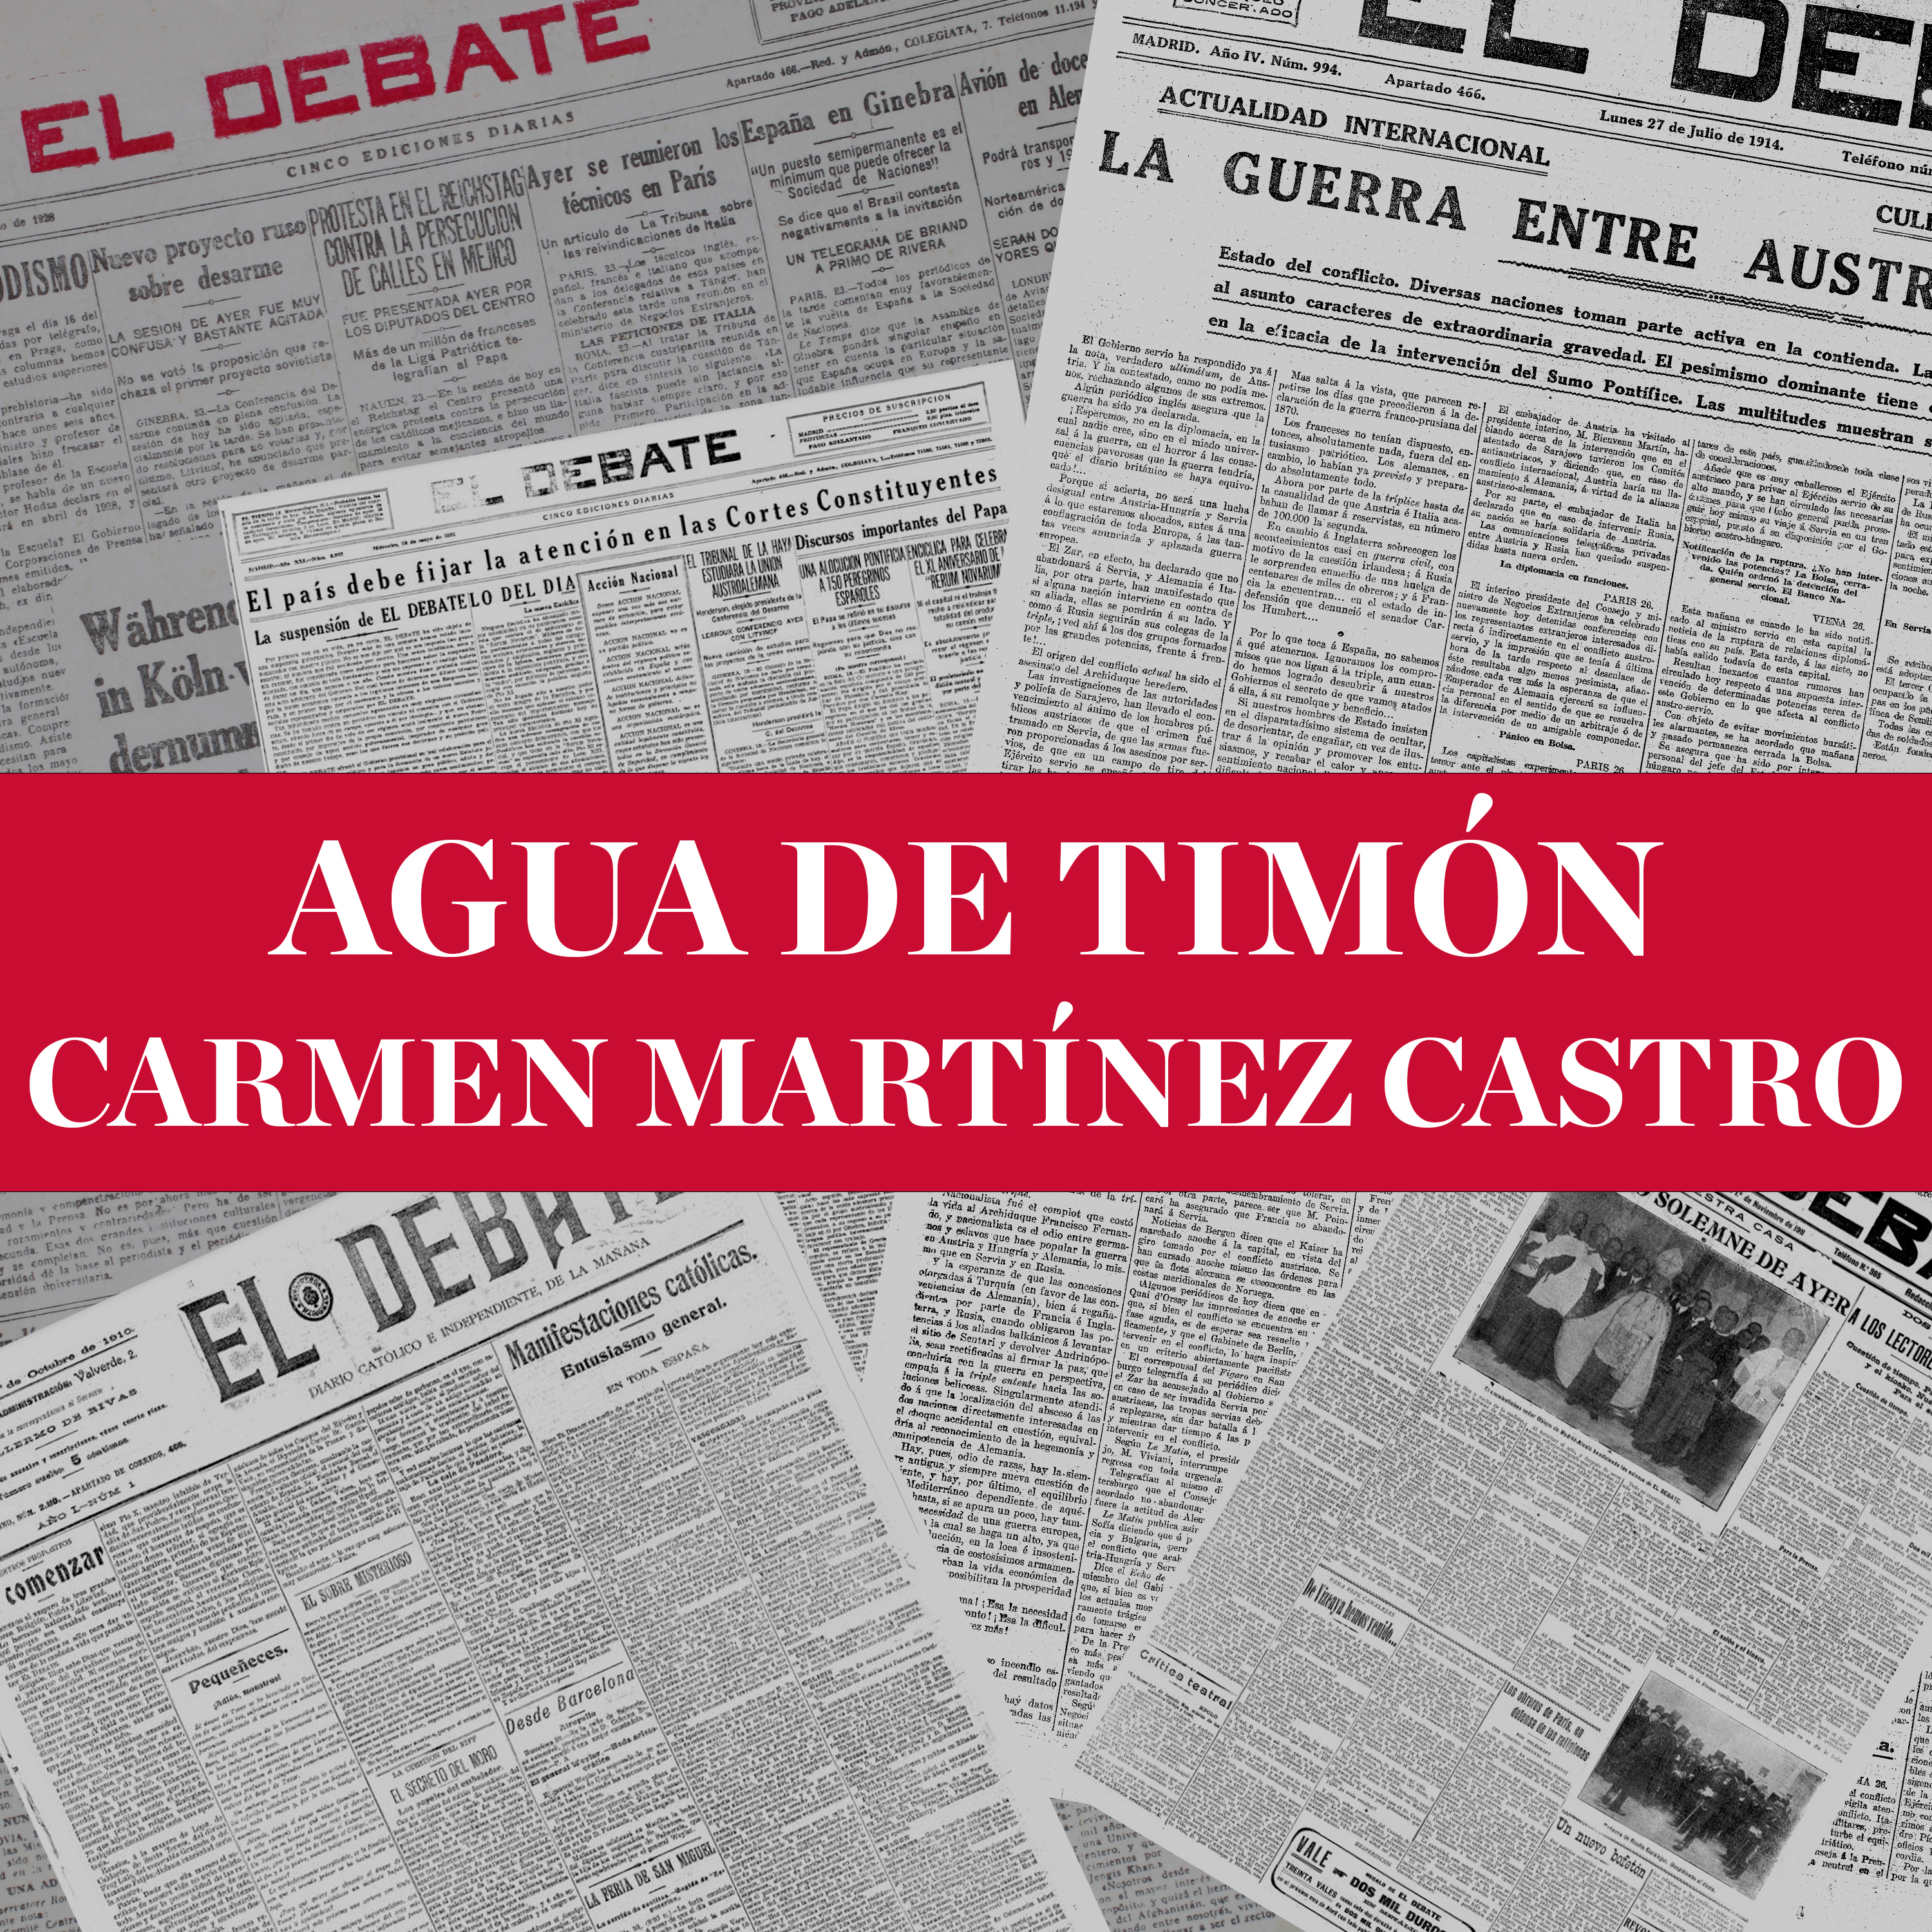 Agua de timón - Carmen Martínez Castro (13/03/22)